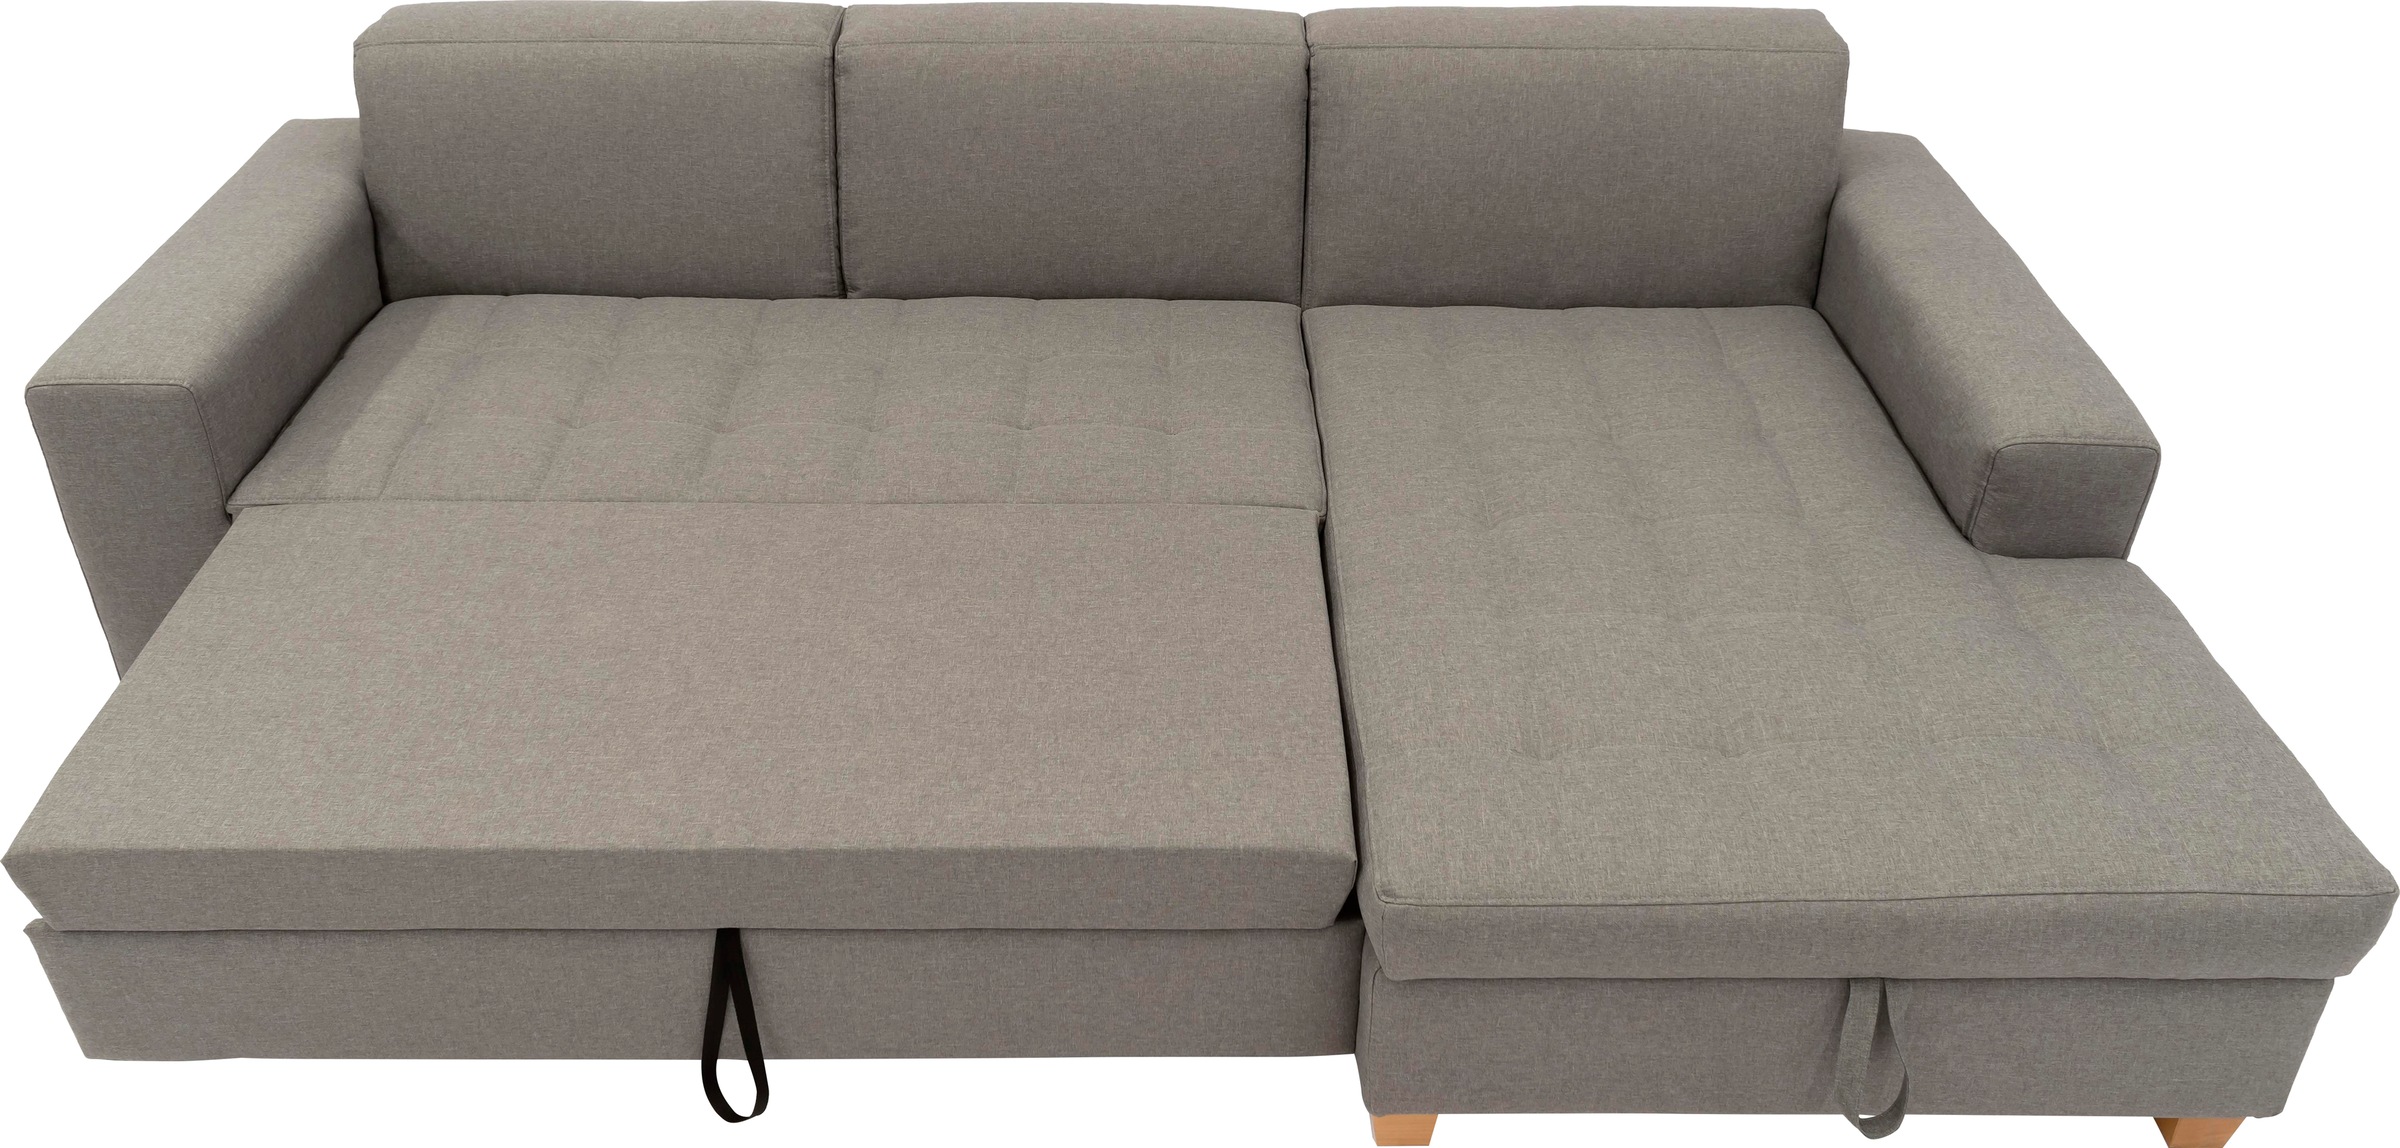 Home affaire Ecksofa »Corby L-Form«, wahlweise mit Bettfunktion, Steppung auf Sitzfläche